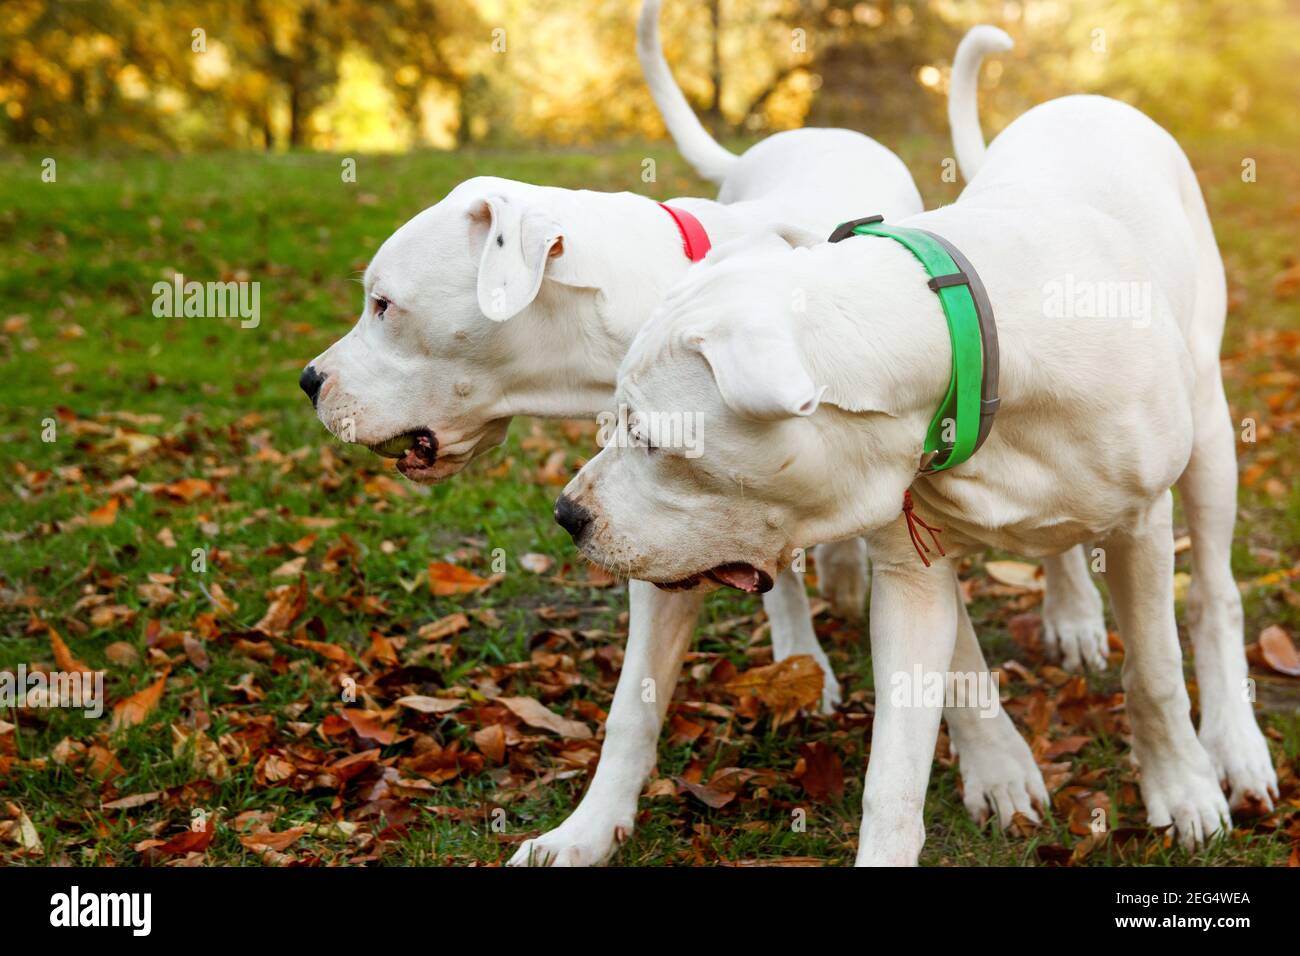 Zwei dogo argentino spielen auf Gras im Herbstpark bei roten Blättern. Hunde Hintergrund Stockfoto